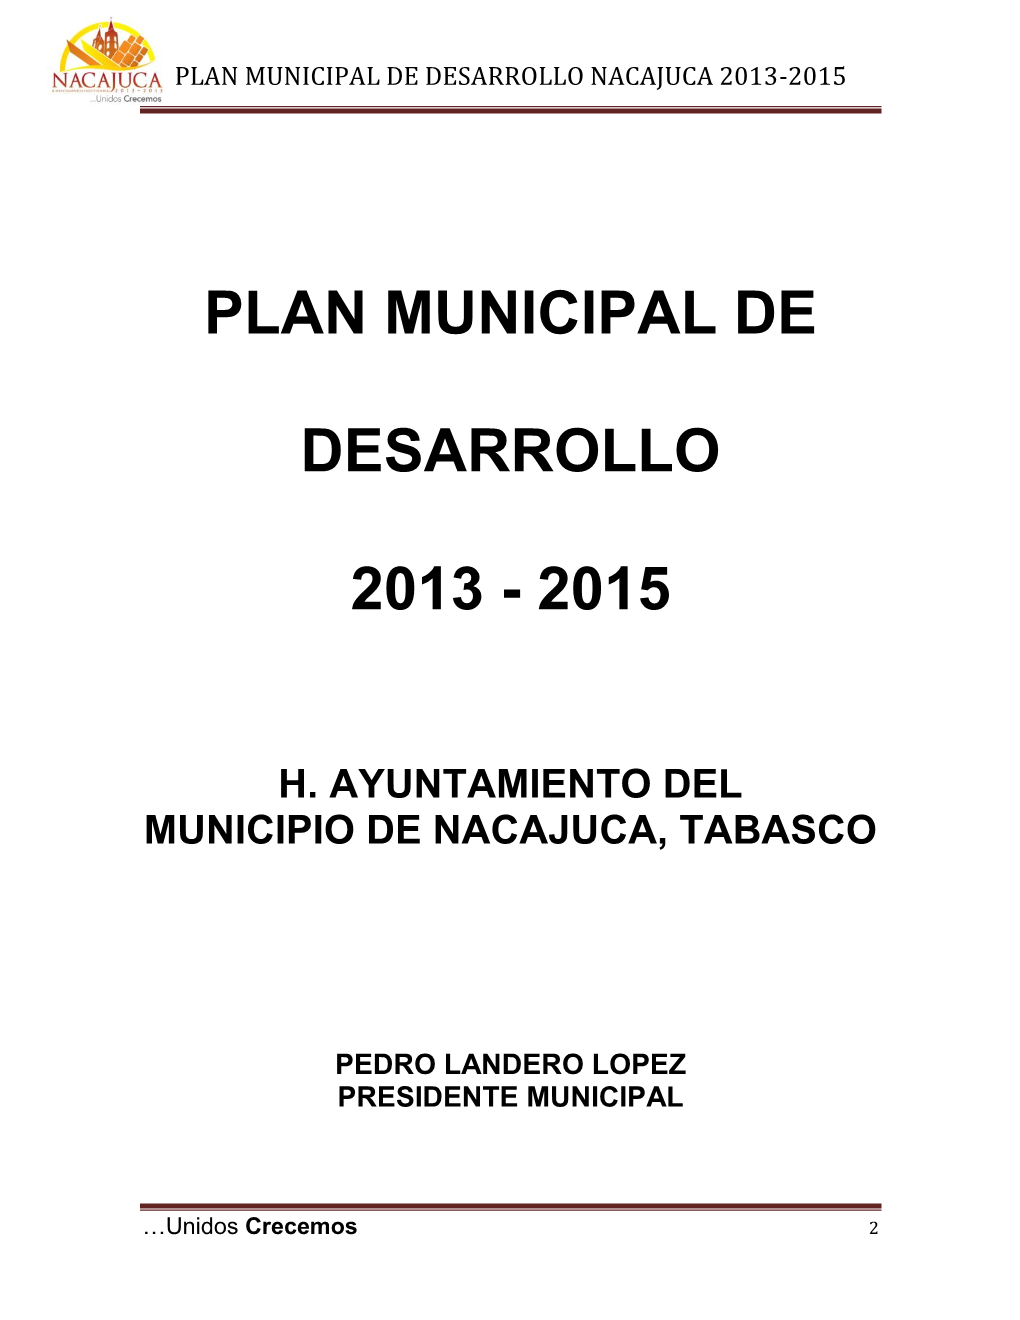 Plan Municipal De Desarrollo Nacajuca 2013-2015